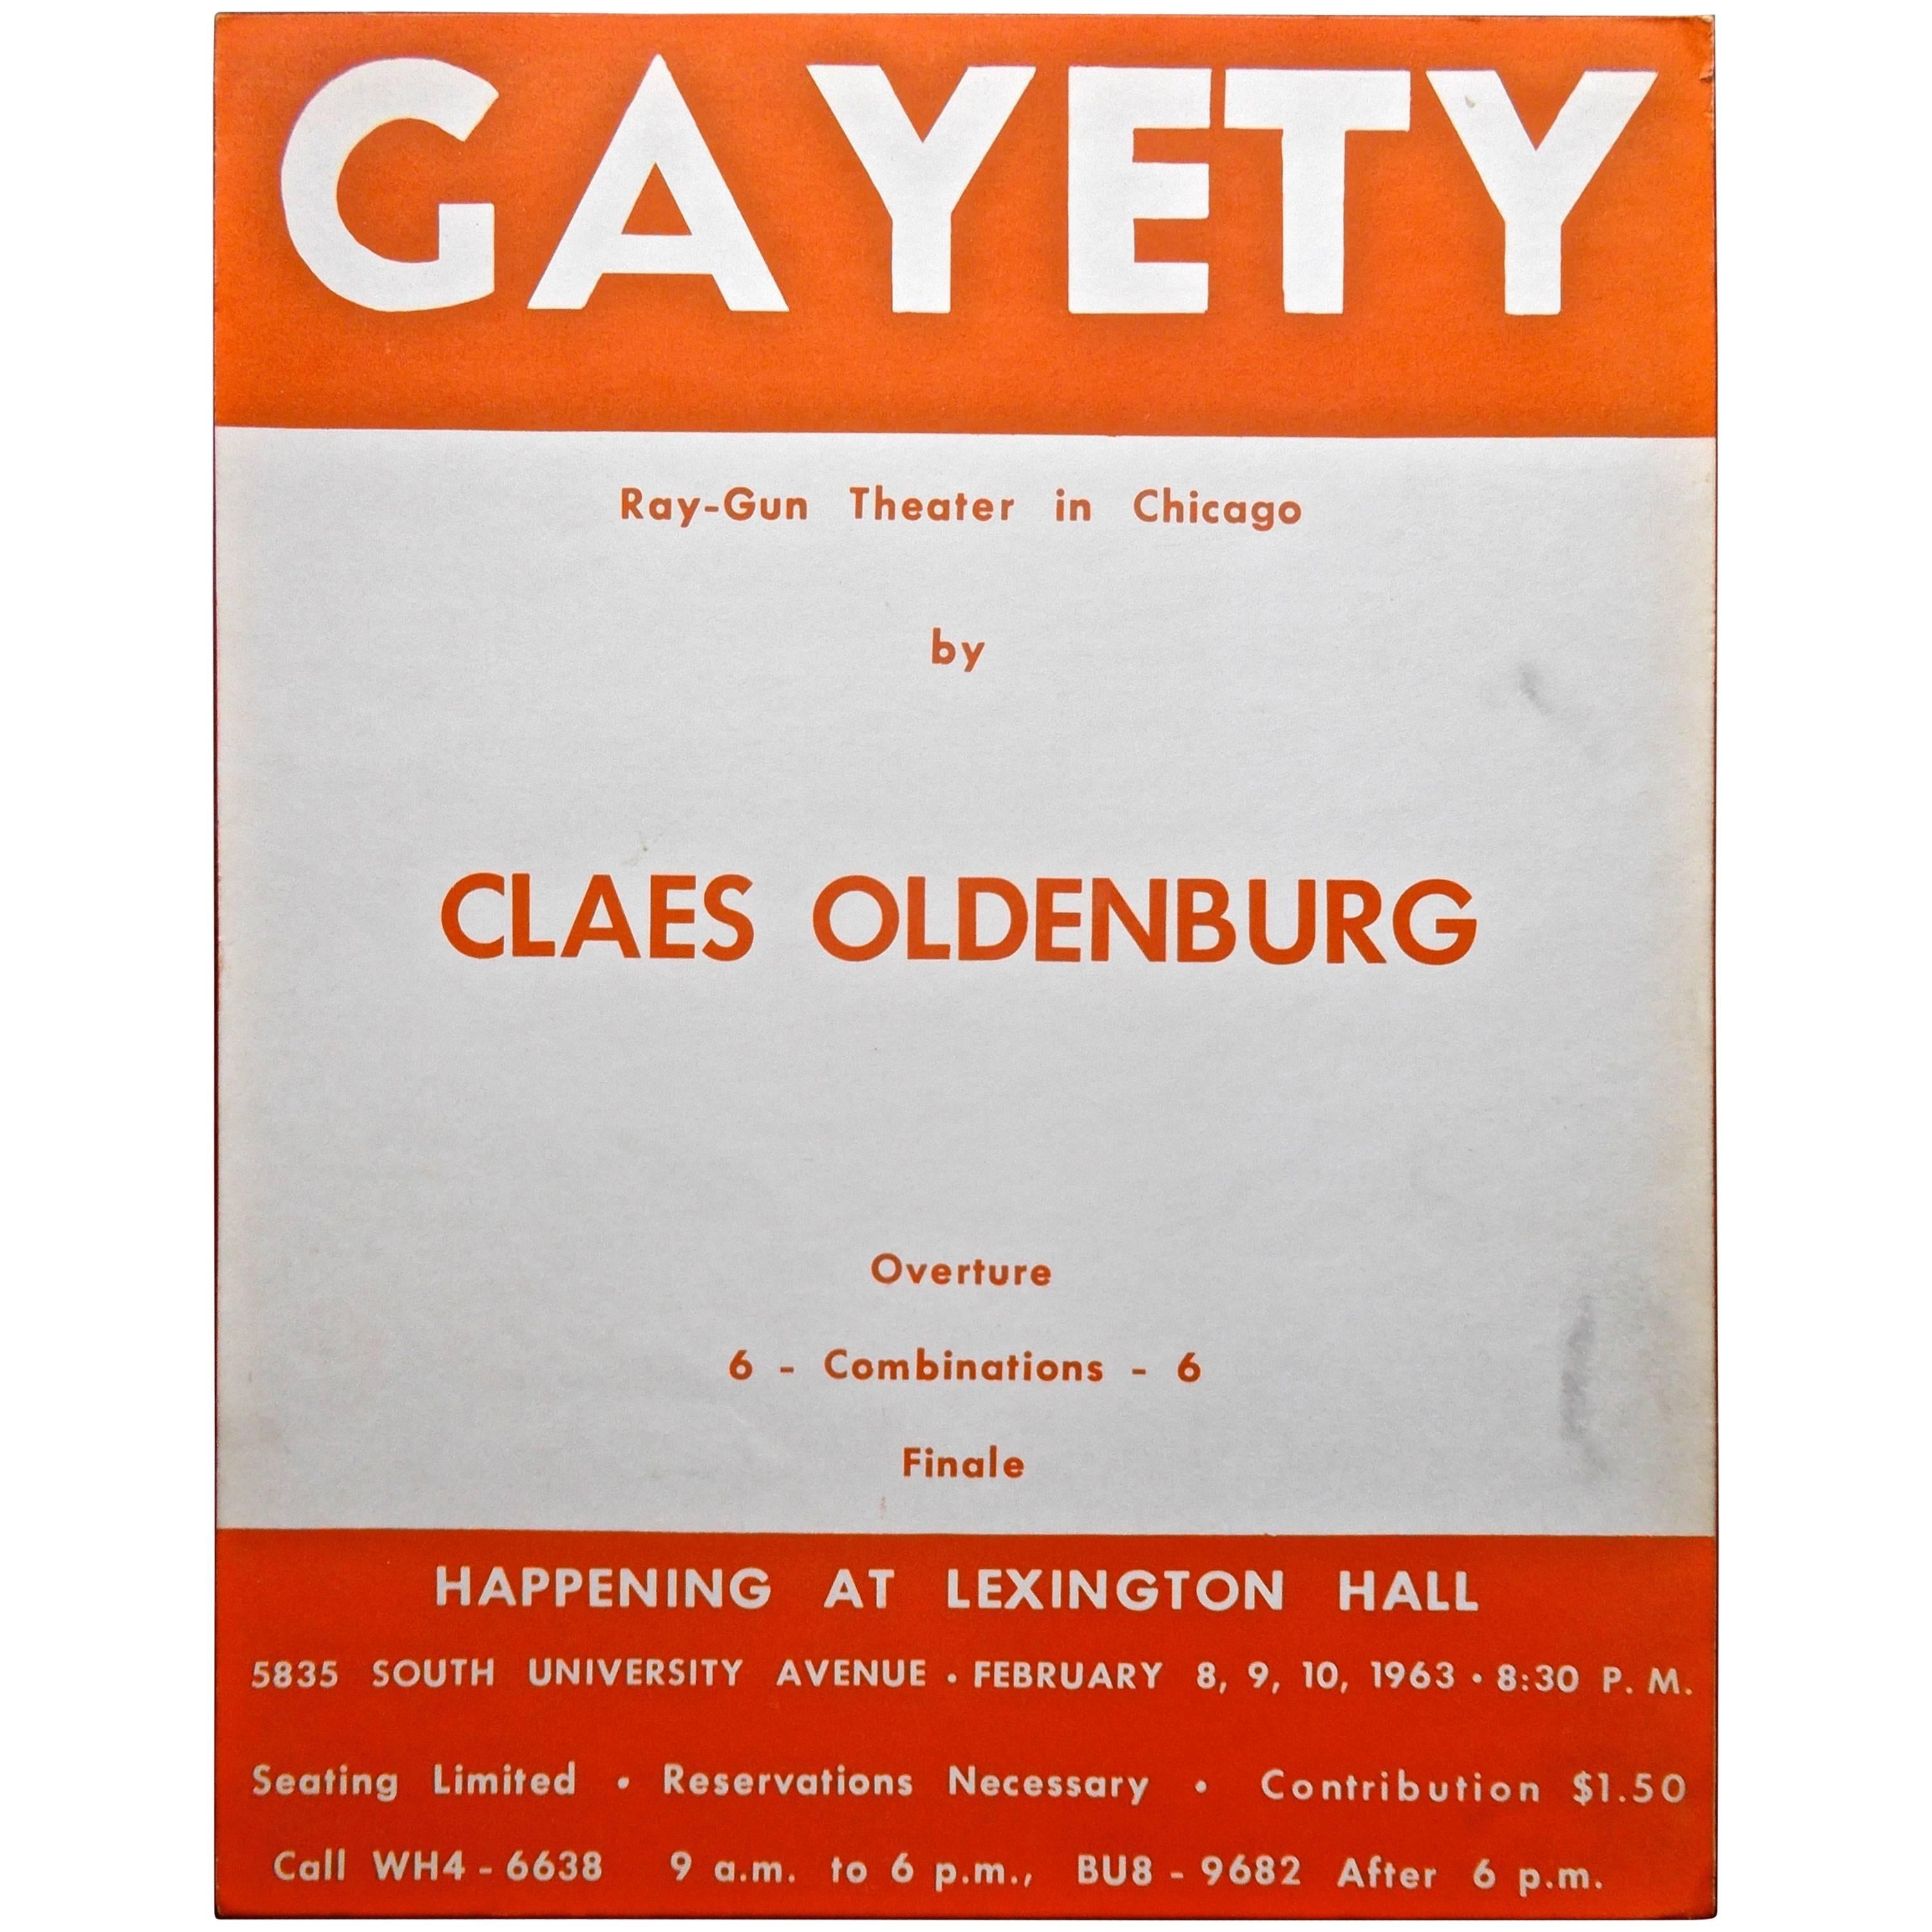 Claes Oldenburg "Gayety" Rare affiche d'origine sur le bonheur